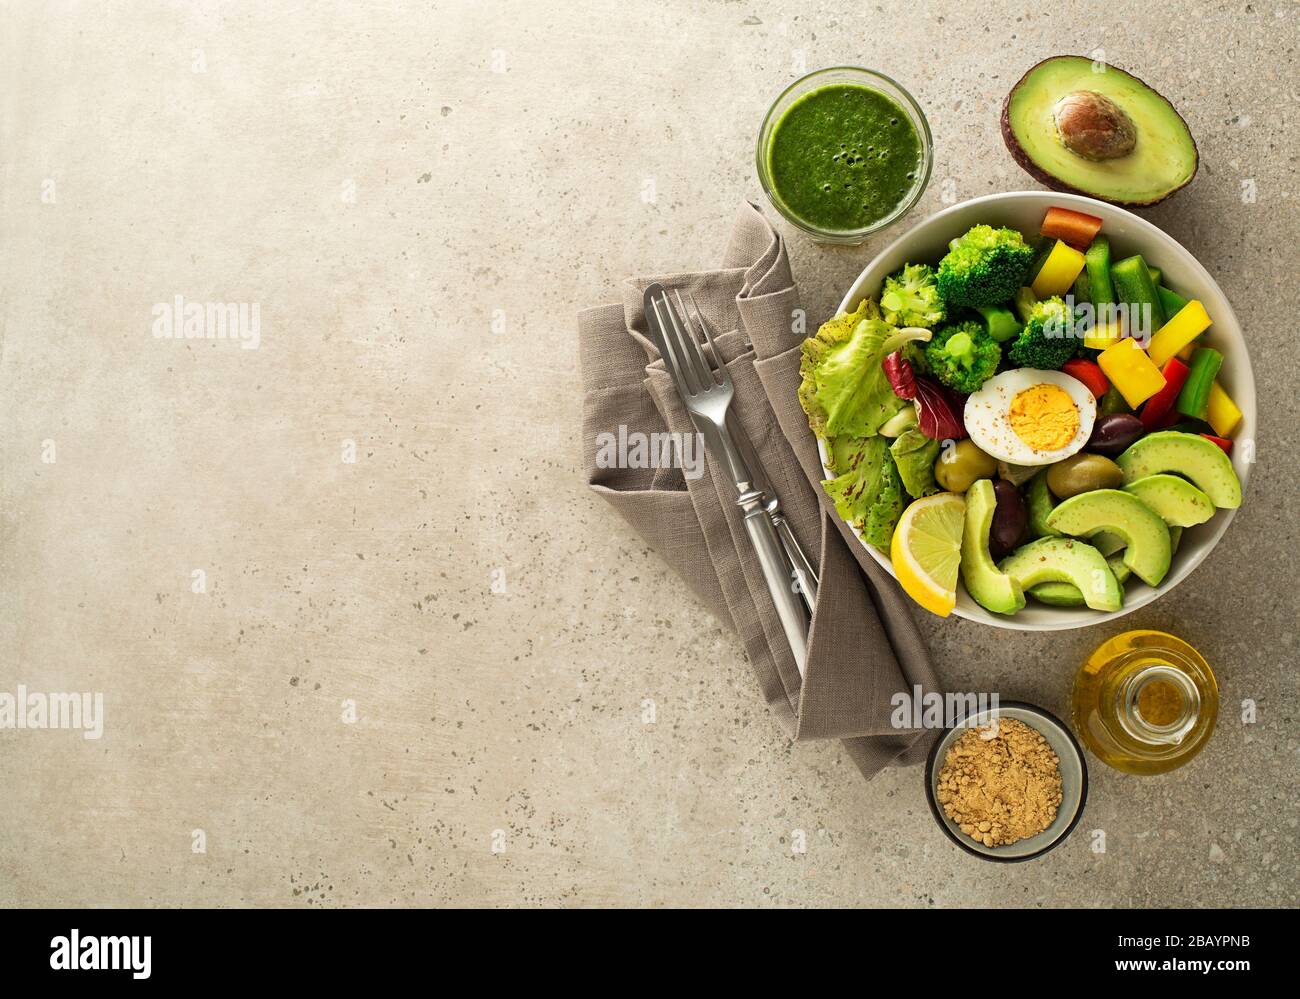 Repas de salade sain avec œufs, avocat et légumes frais mélangés sur fond gris vue de dessus. Alimentation et santé. Concept de repas sain Banque D'Images